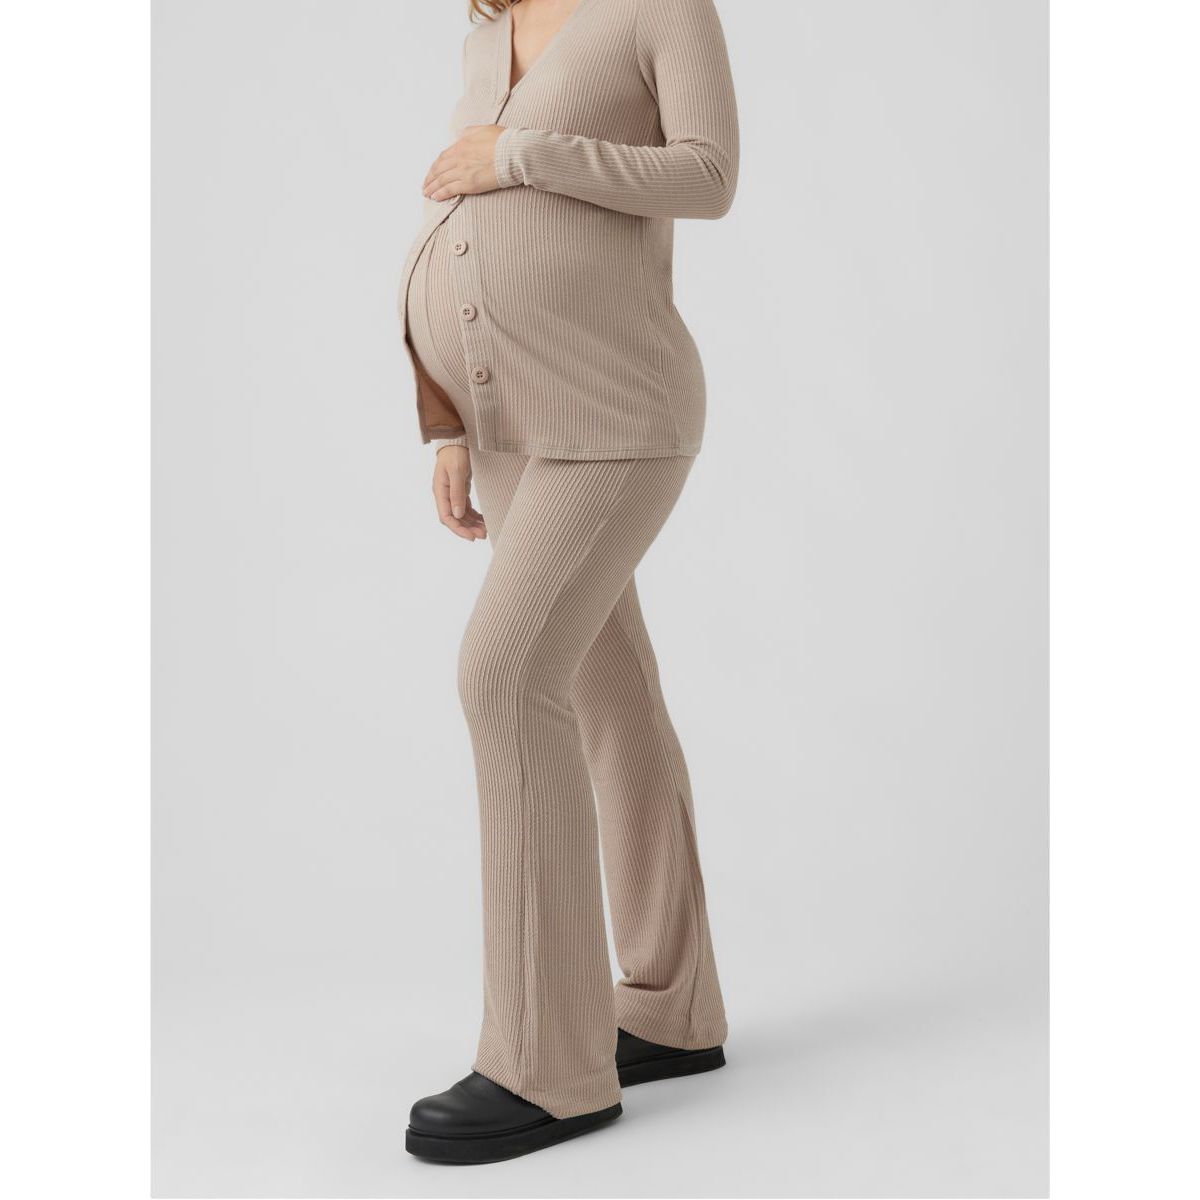 ESRA Femme Pantalon Skinny grossesses Pantalon Maternité Pantalon Elastique J530 